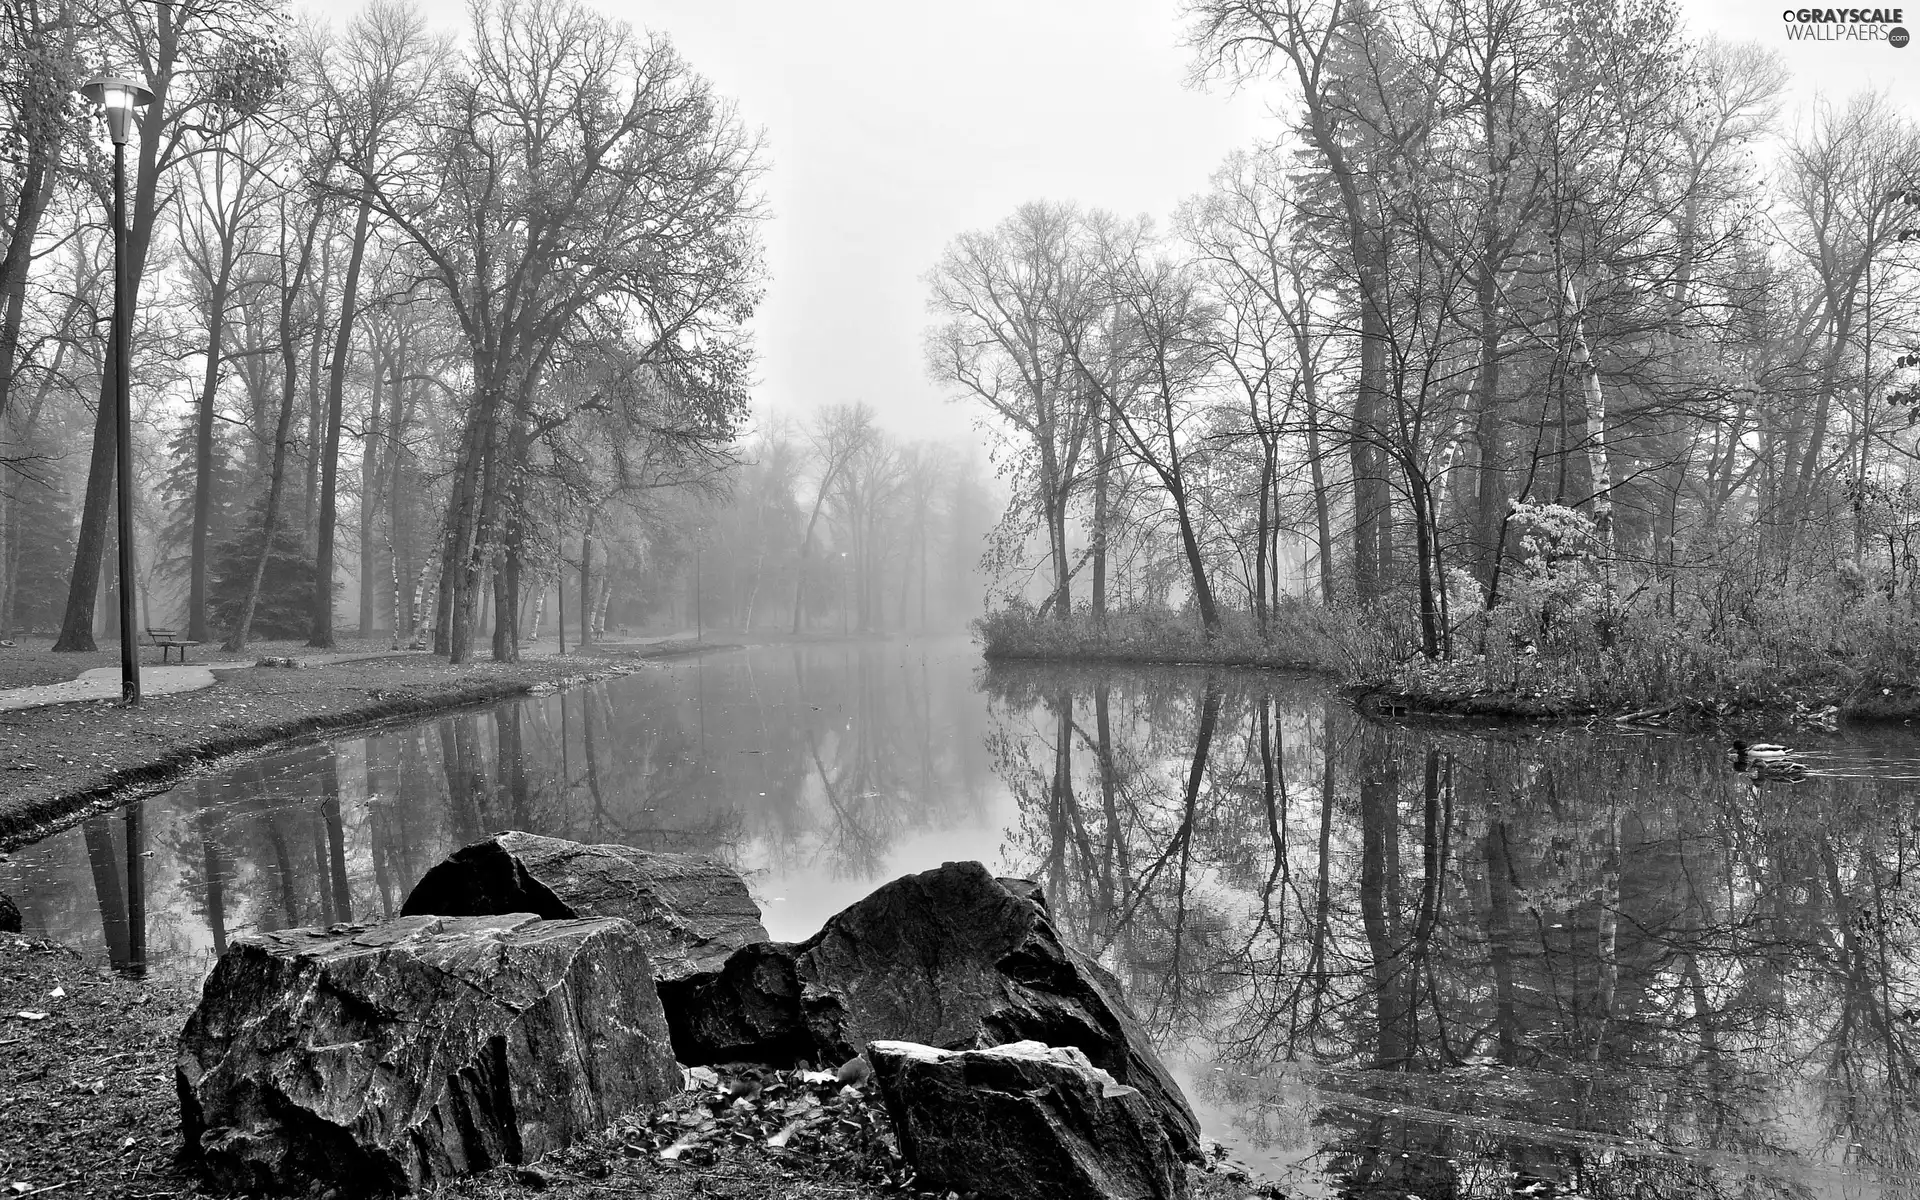 Stones, River, Fog, autumn, Park, ducks